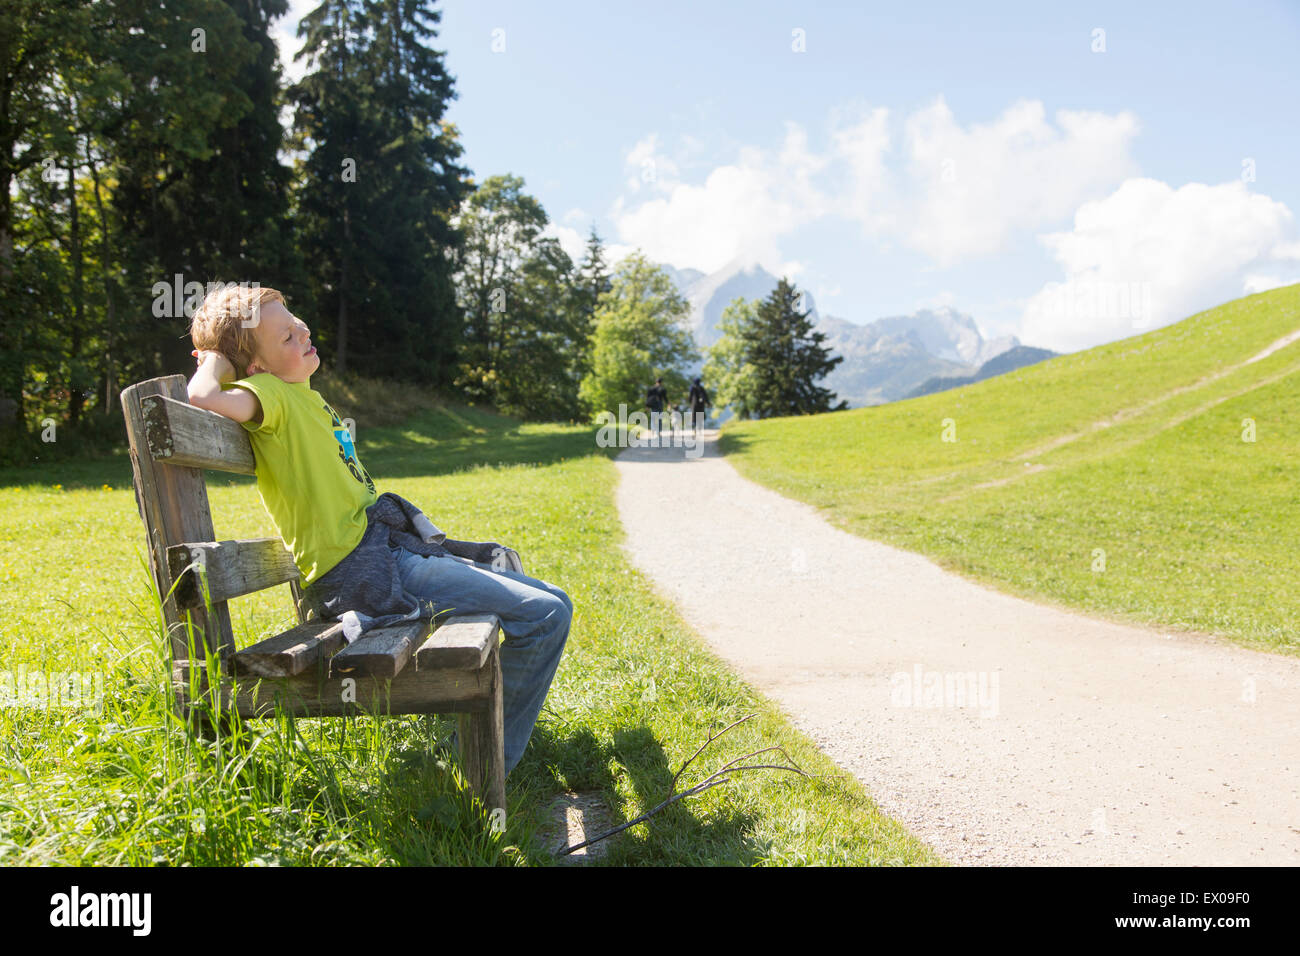 Boy sitting on park bench at rural roadside,  Eckbauer bei Garmisch, Bavaria, Germany Stock Photo